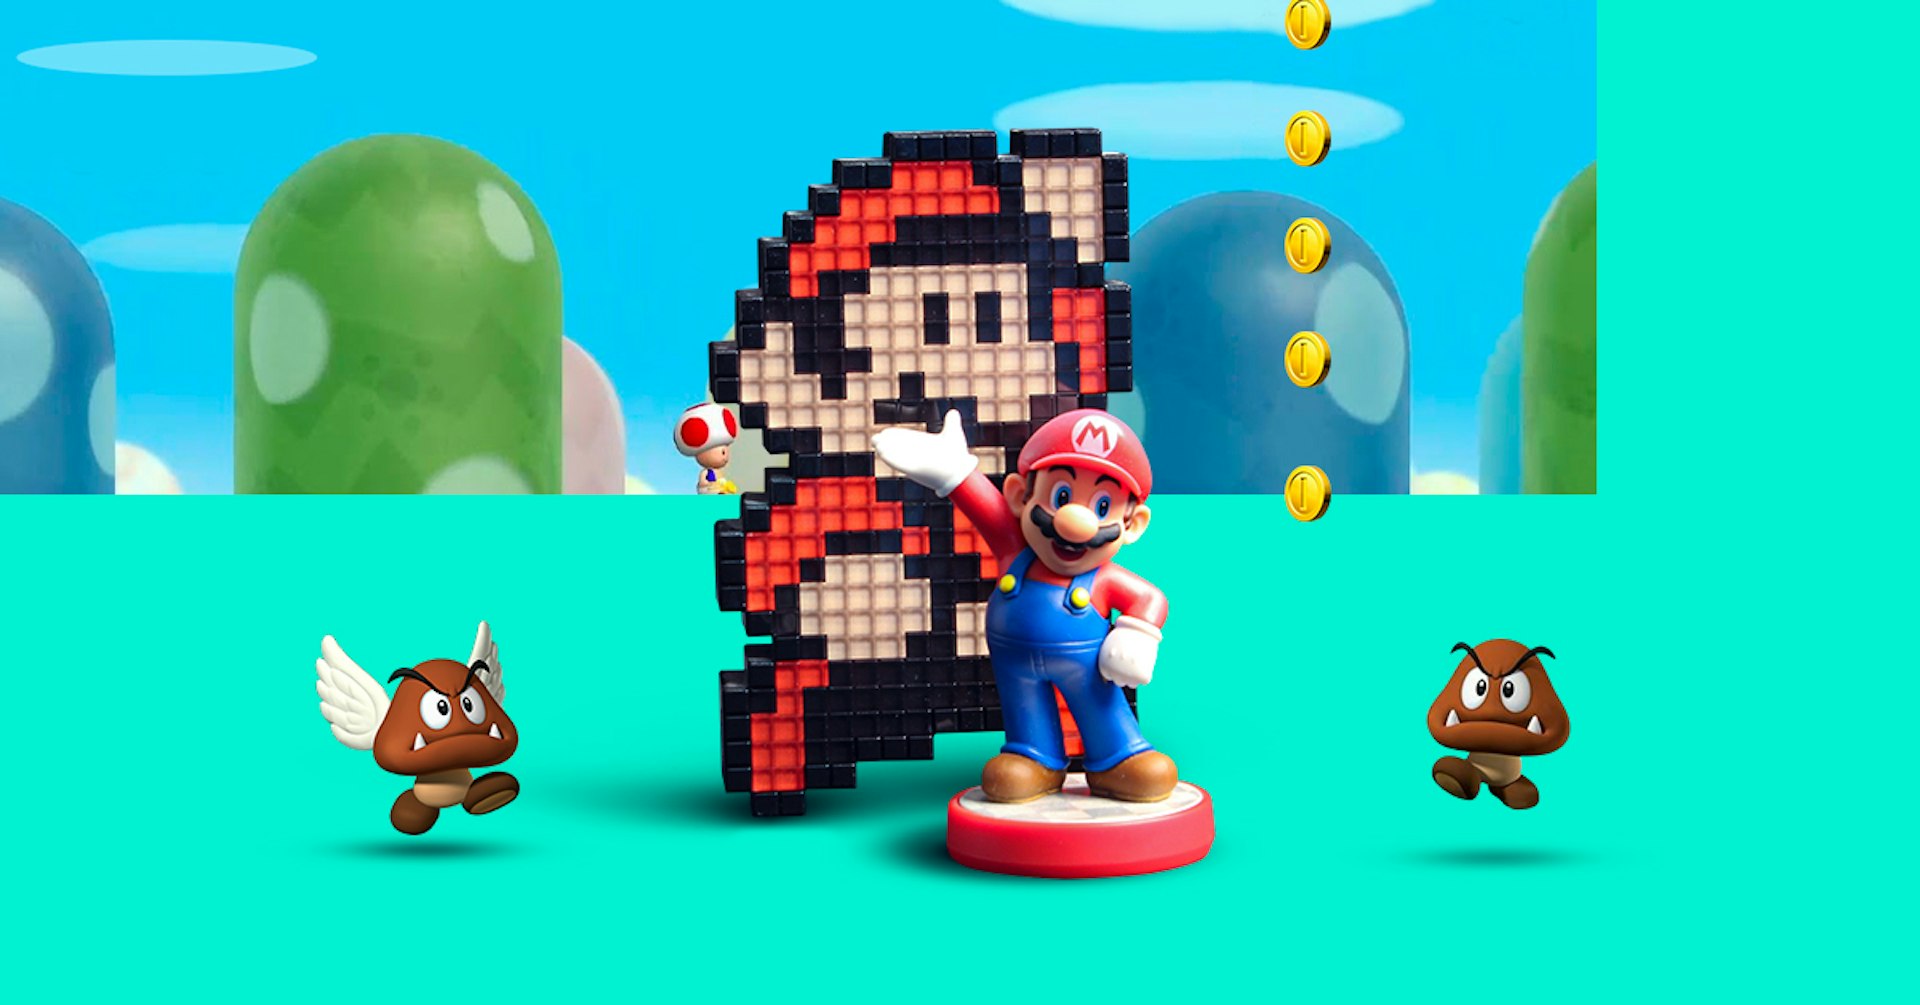 Descubre la evolución de los juegos de Mario Bros y conoce todo sobre sus personajes